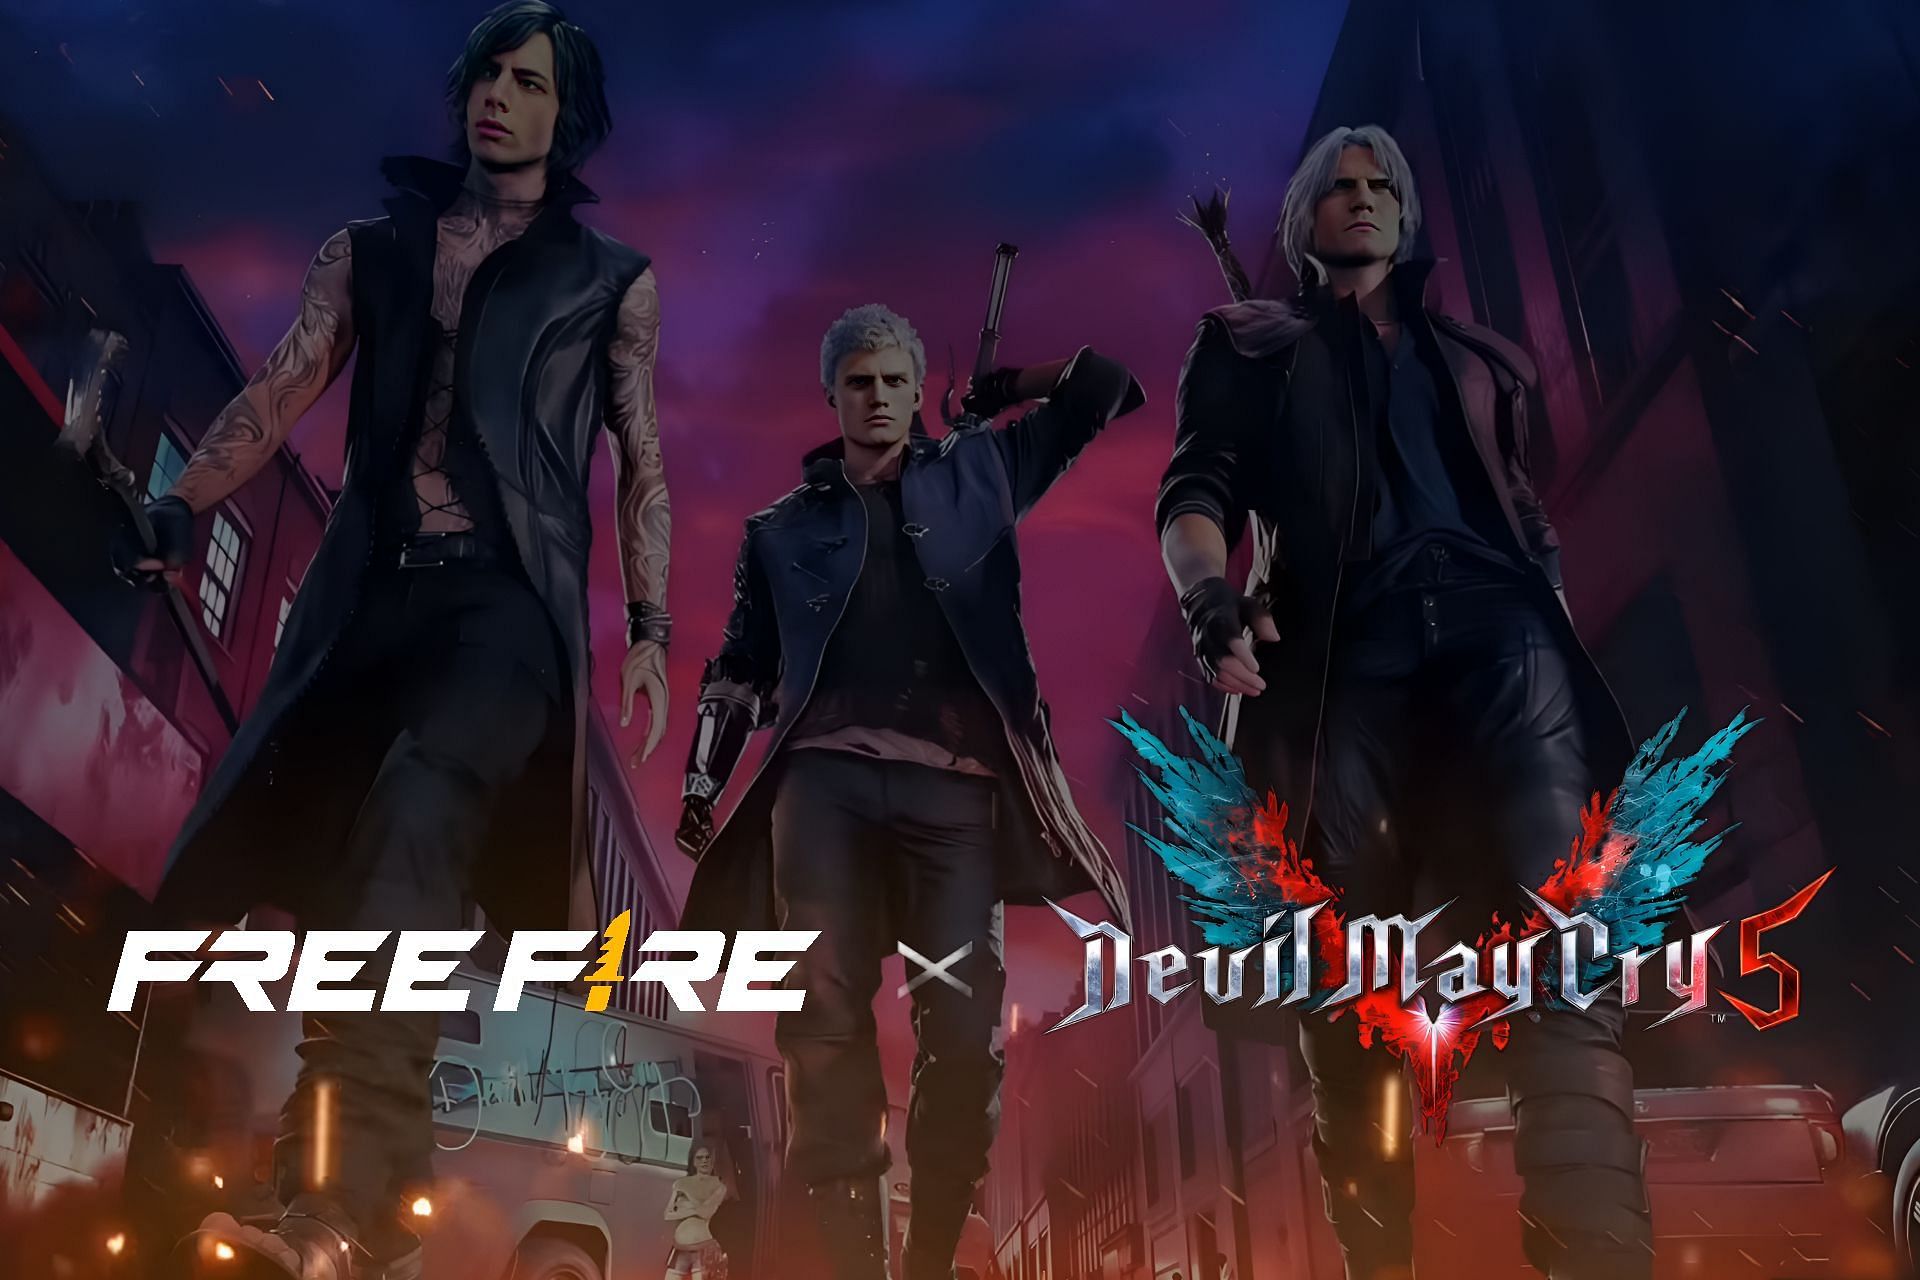 Free Fire revela crossover com Devil May Cry 5 em fevereiro; veja